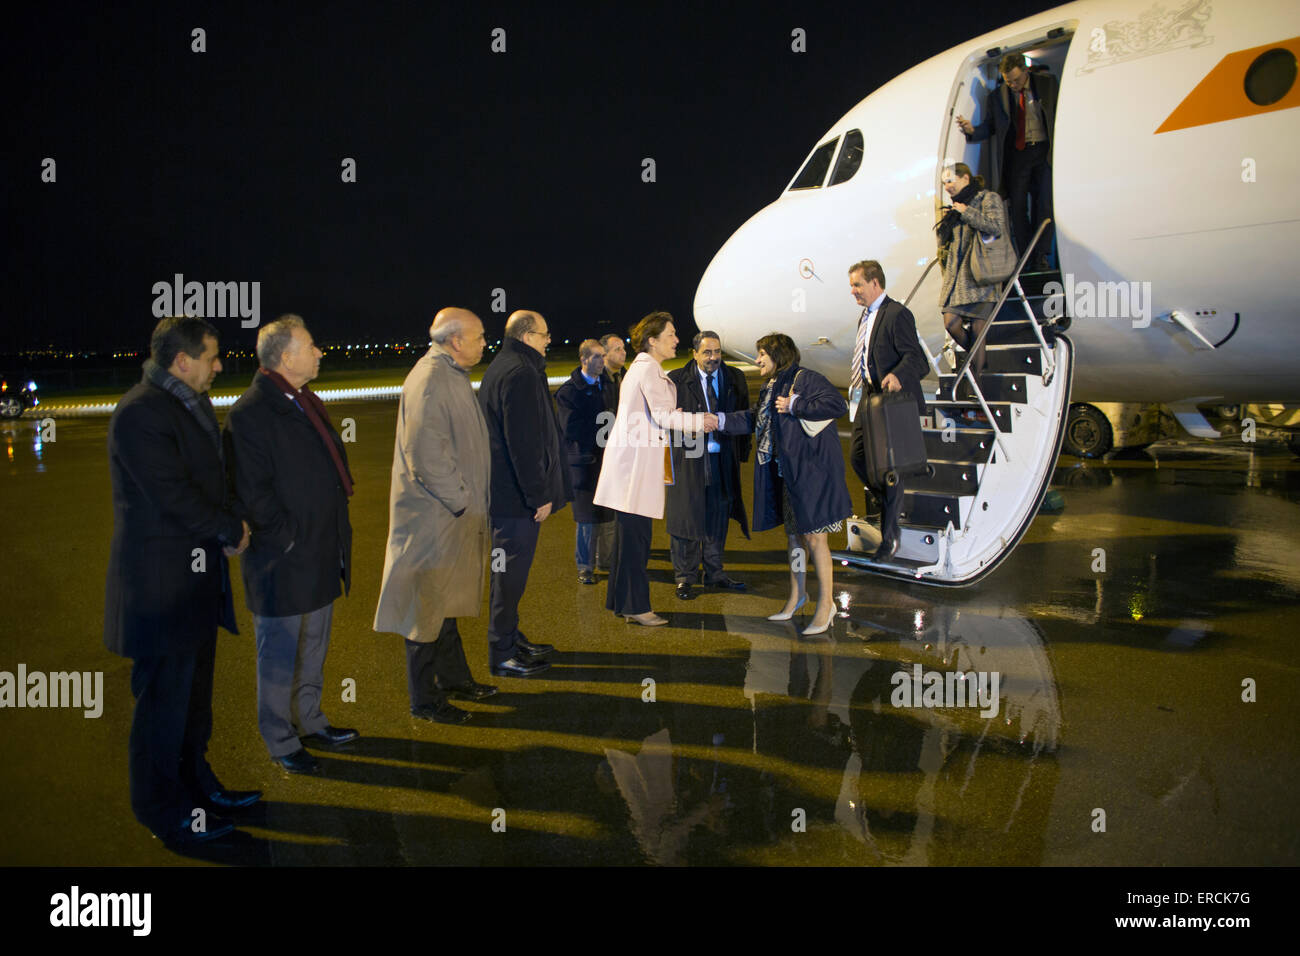 El ministro de desarrollo y comercio holandés Lilianne Ploumen en una misión comercial a Argel volando en el plano gubernamental KBX, holandés. Foto de stock